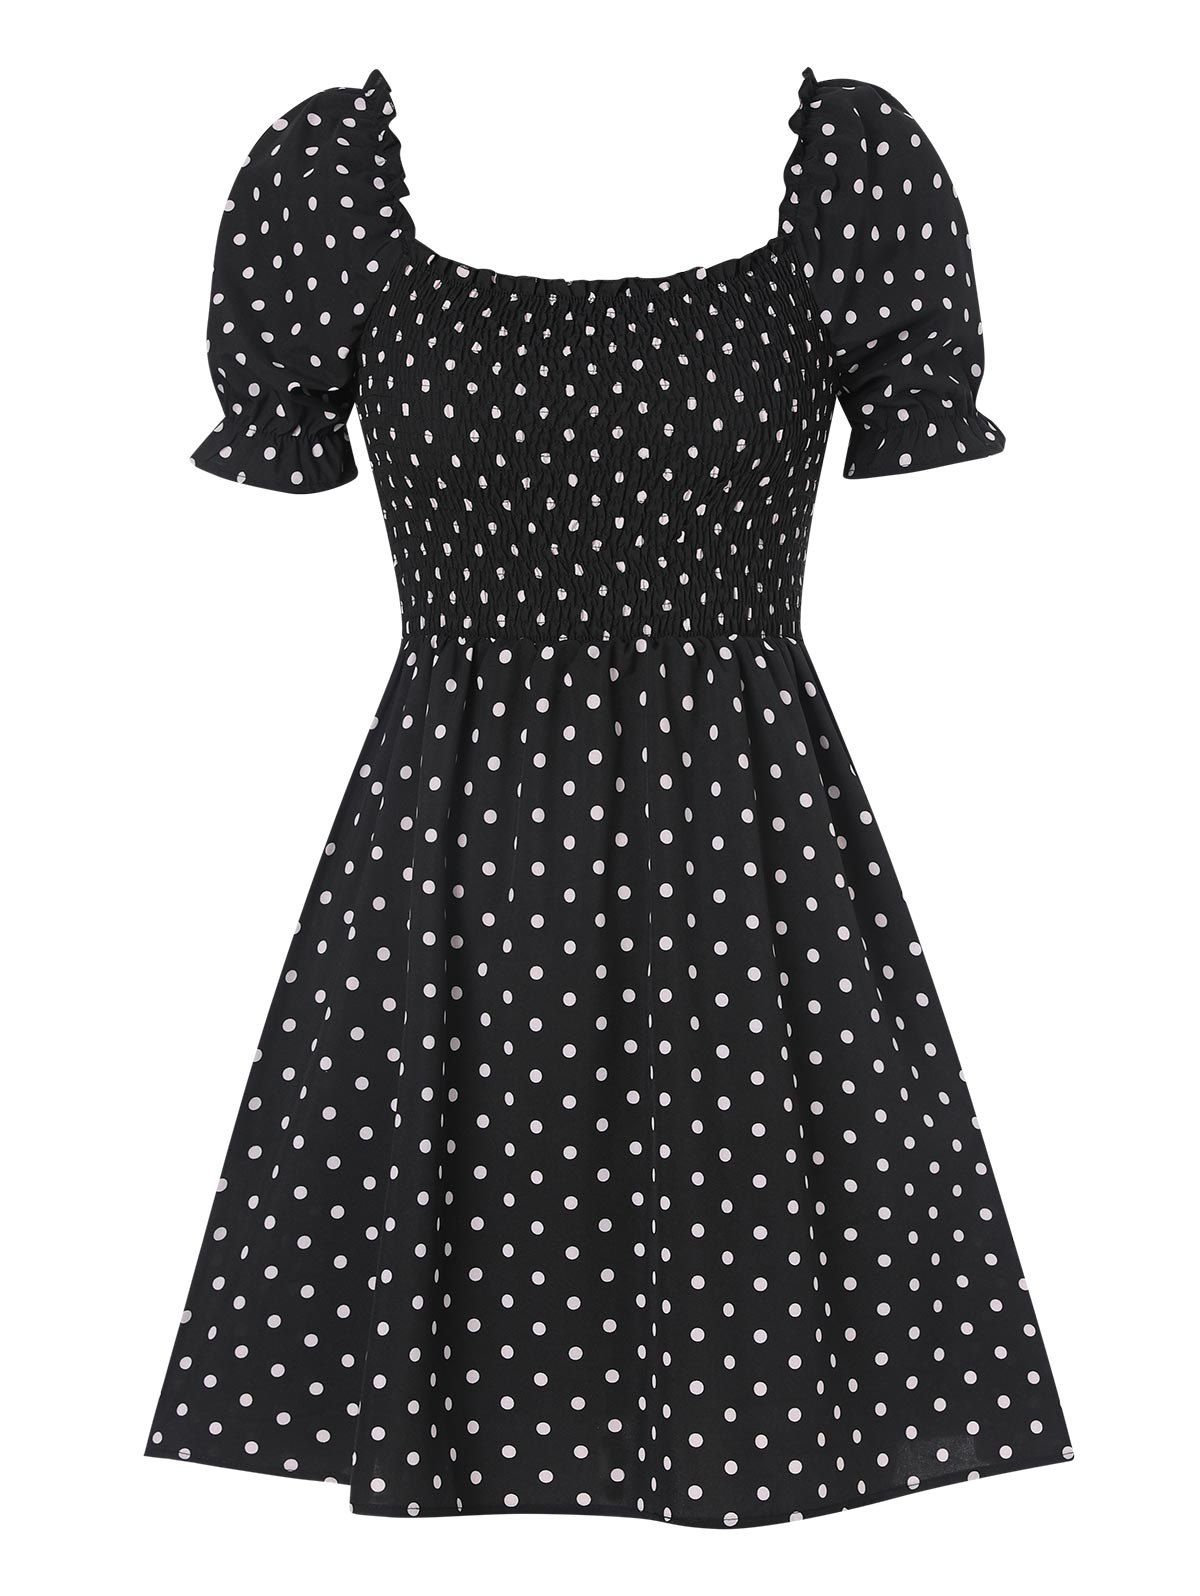 Vintage Dress Polka Dots Print Mini Dress Ruffled Puff Sleeve Square Neck Dress - BLACK L